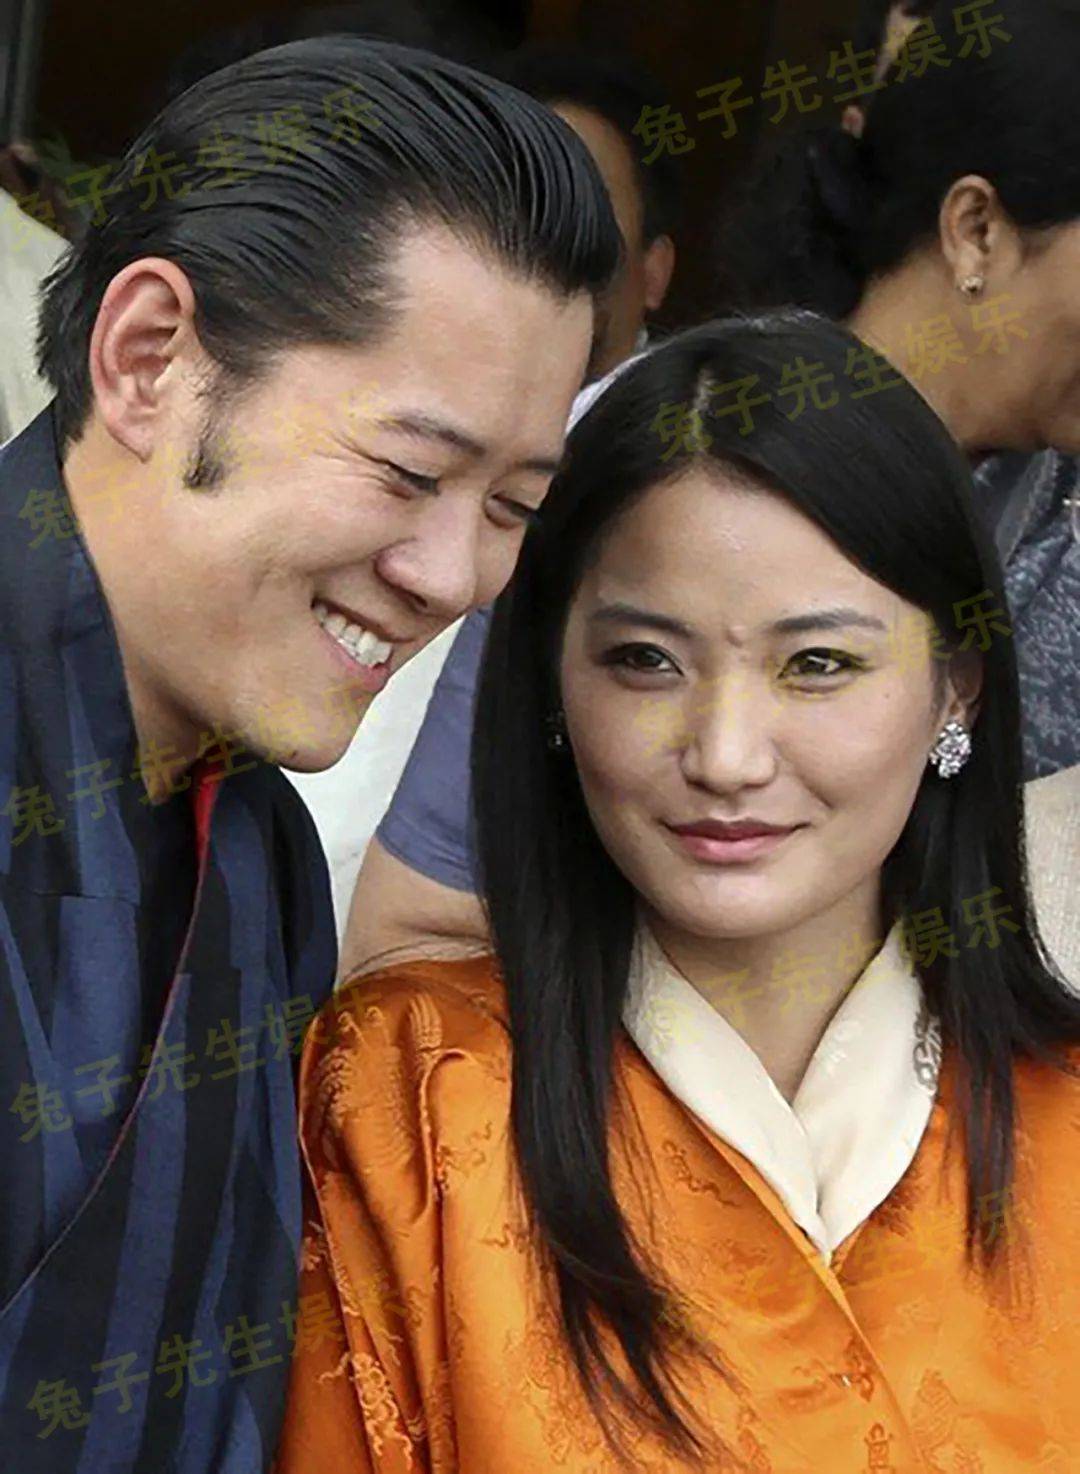 原创30岁不丹王后情绪低落与丈夫牵手苦着一张脸国王欲言又止真尬